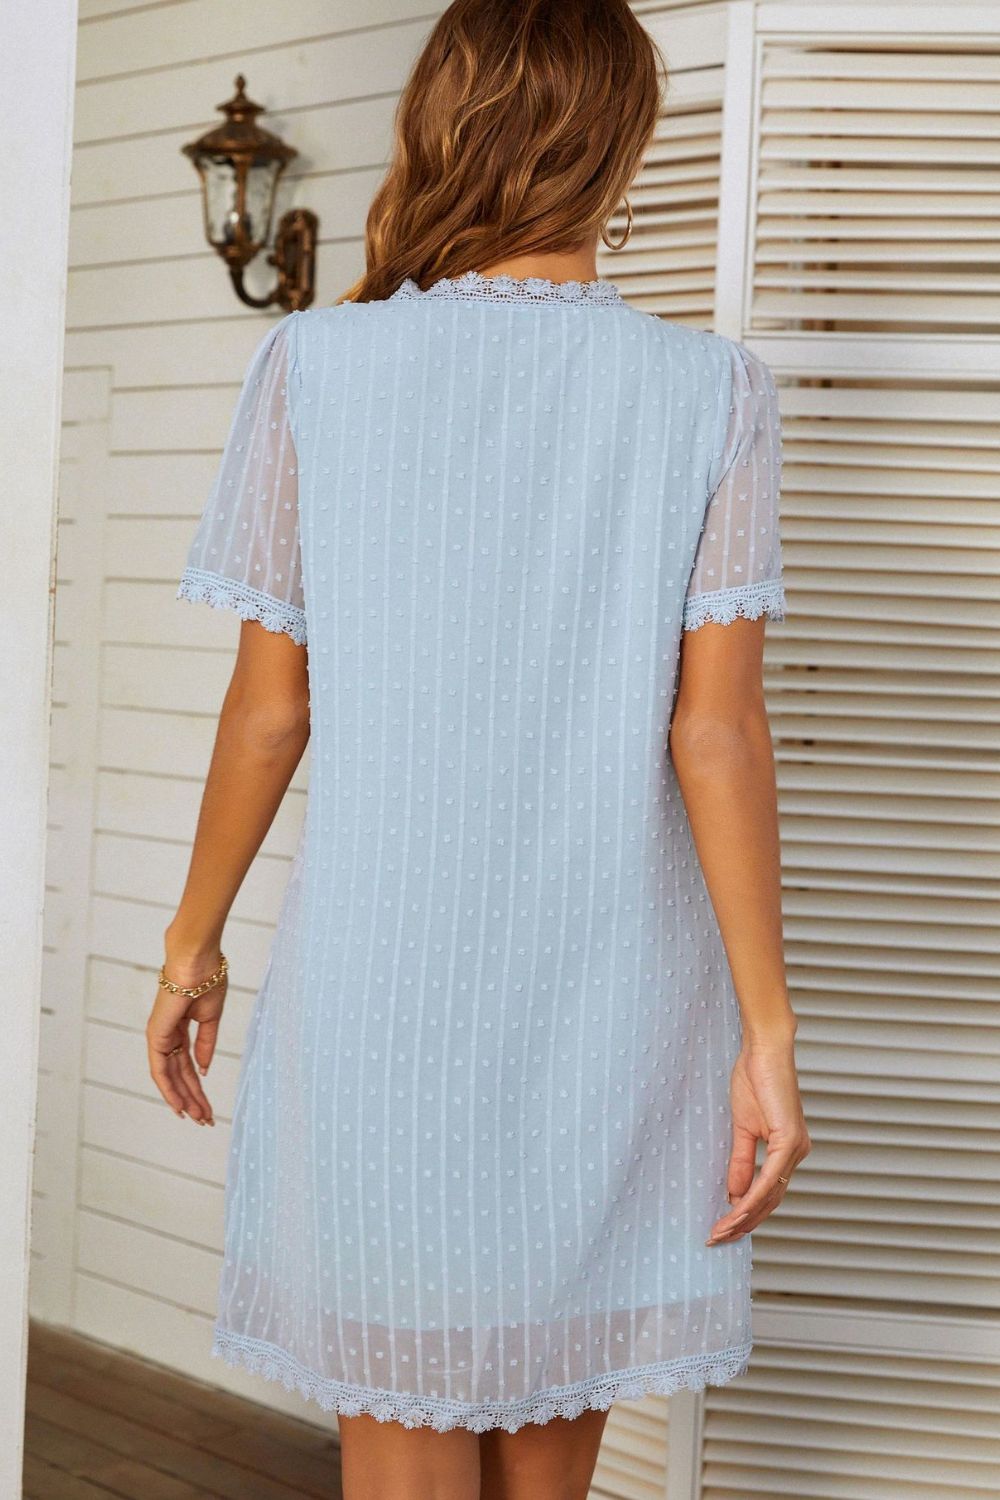 Swiss Dot Double-Layered Lace Trim Dress - Keene's